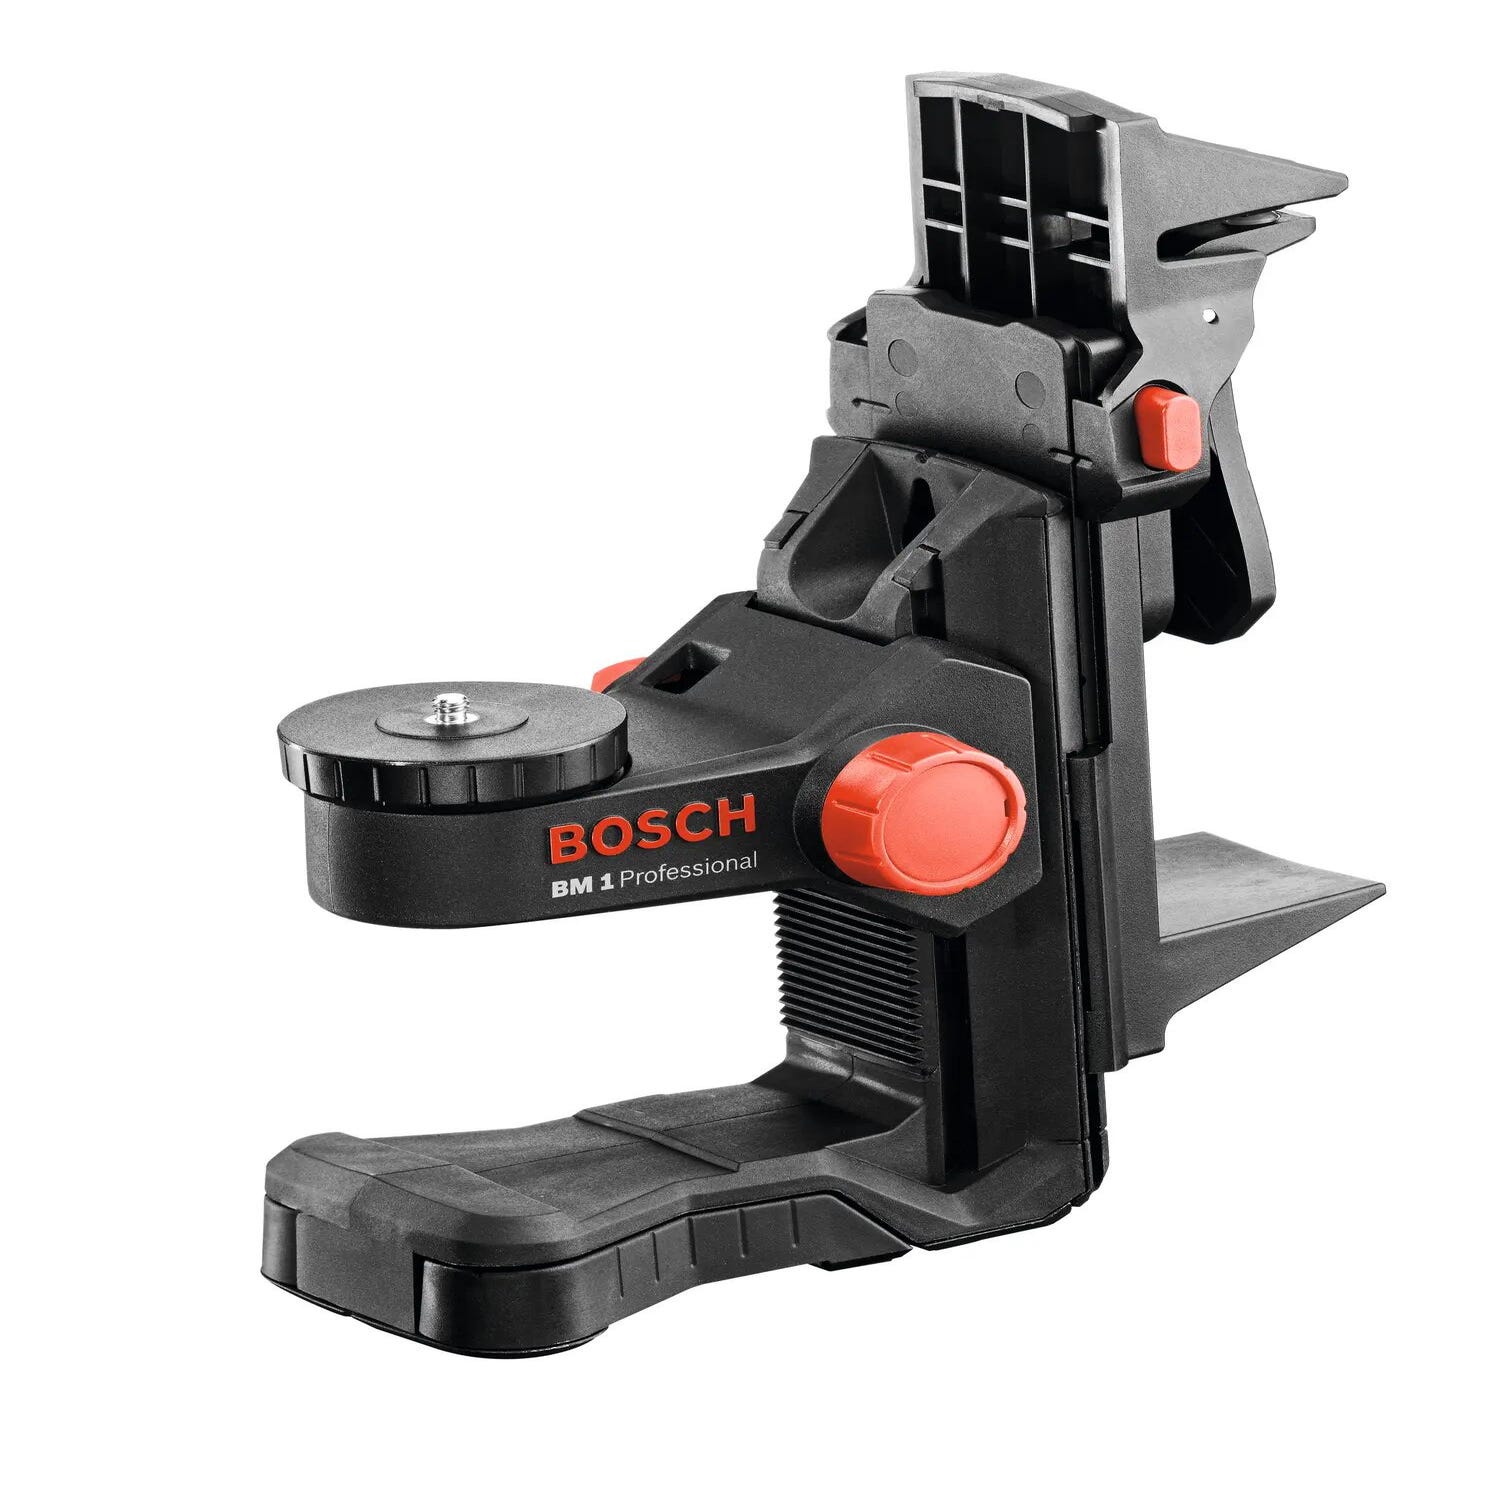 Soporte Bosch BM1, para niveles laser, con clip para fijación y con imán  para fijación en superficies magnéticas.